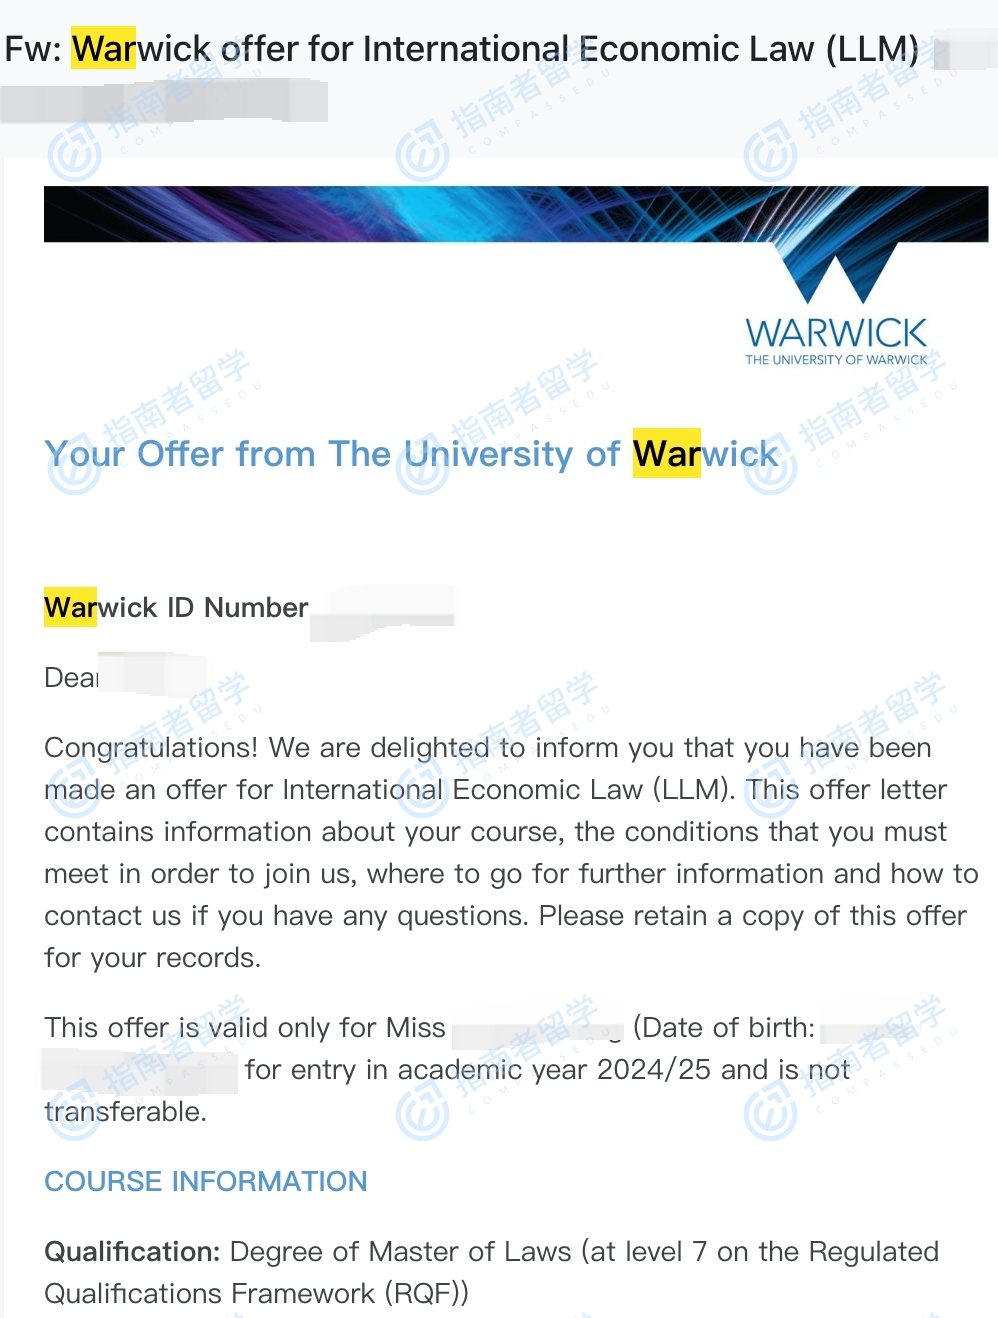 华威大学国际经济法法学硕士研究生offer一枚